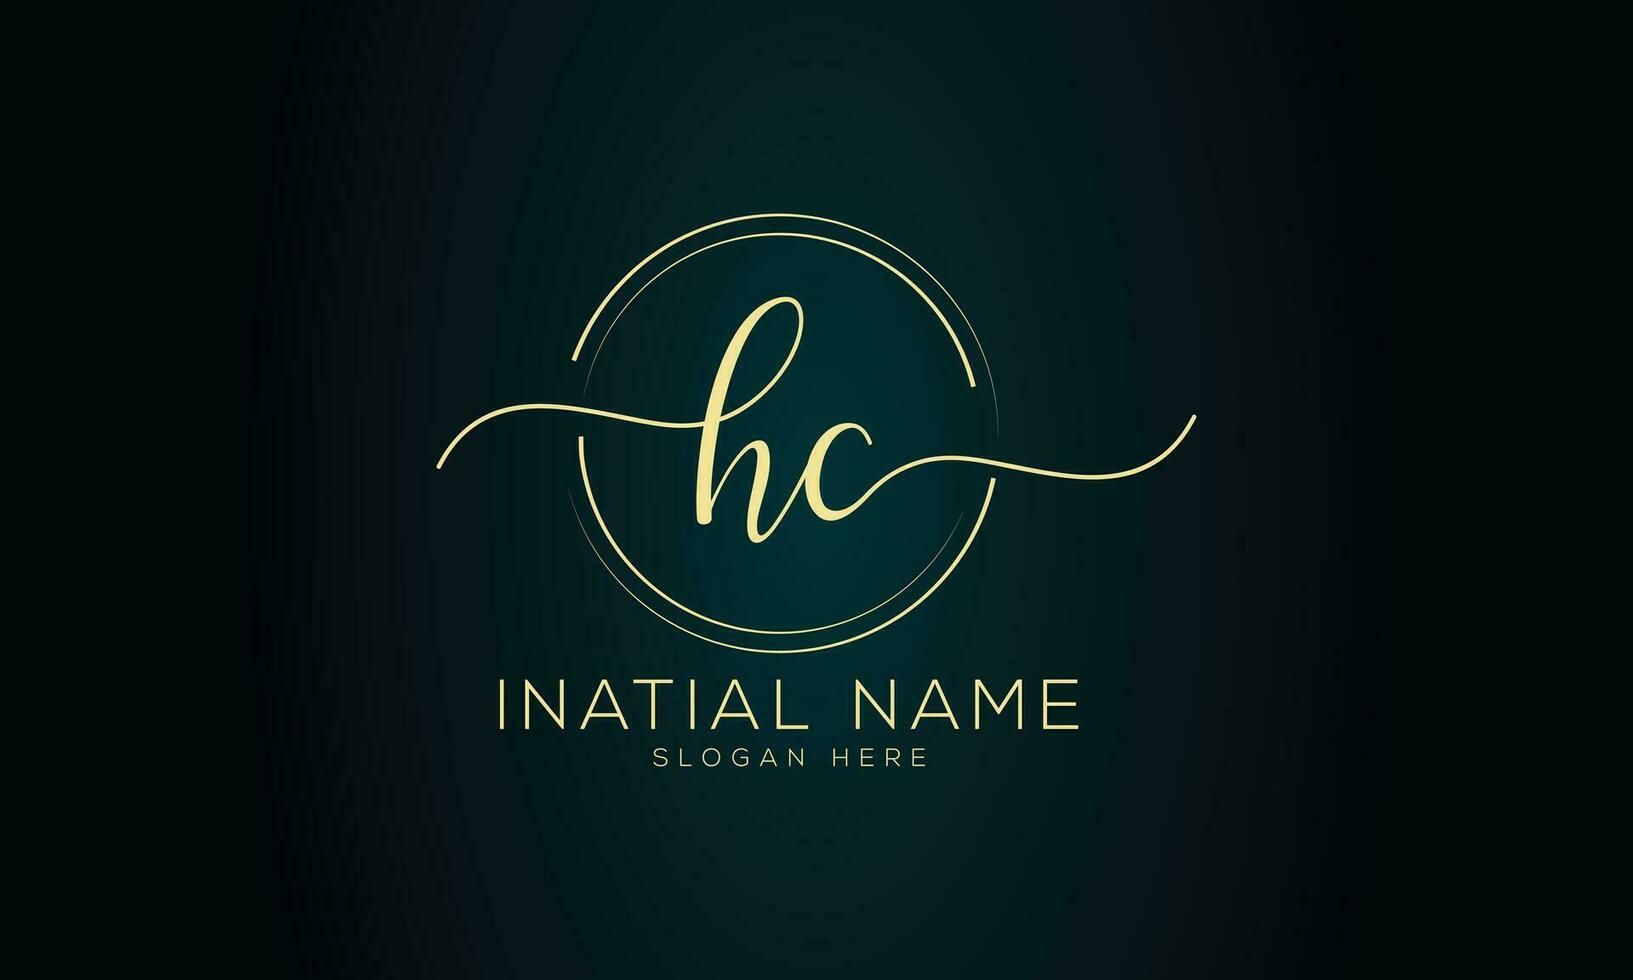 Hc initial handwriting signature logo design vector